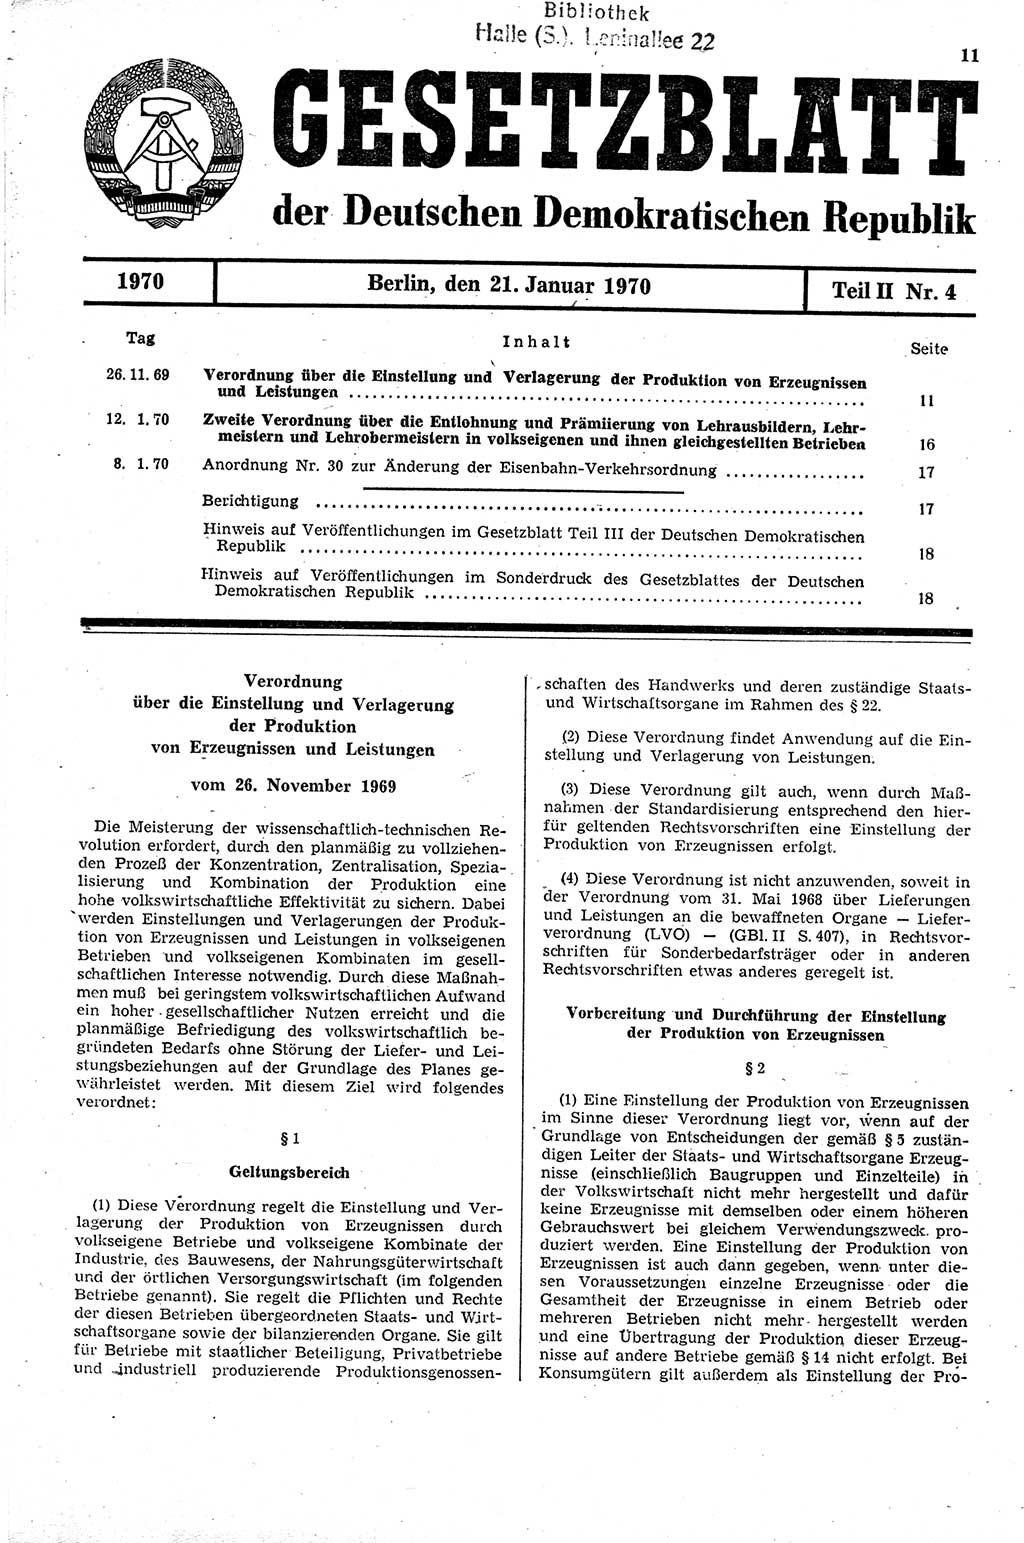 Gesetzblatt (GBl.) der Deutschen Demokratischen Republik (DDR) Teil ⅠⅠ 1970, Seite 11 (GBl. DDR ⅠⅠ 1970, S. 11)